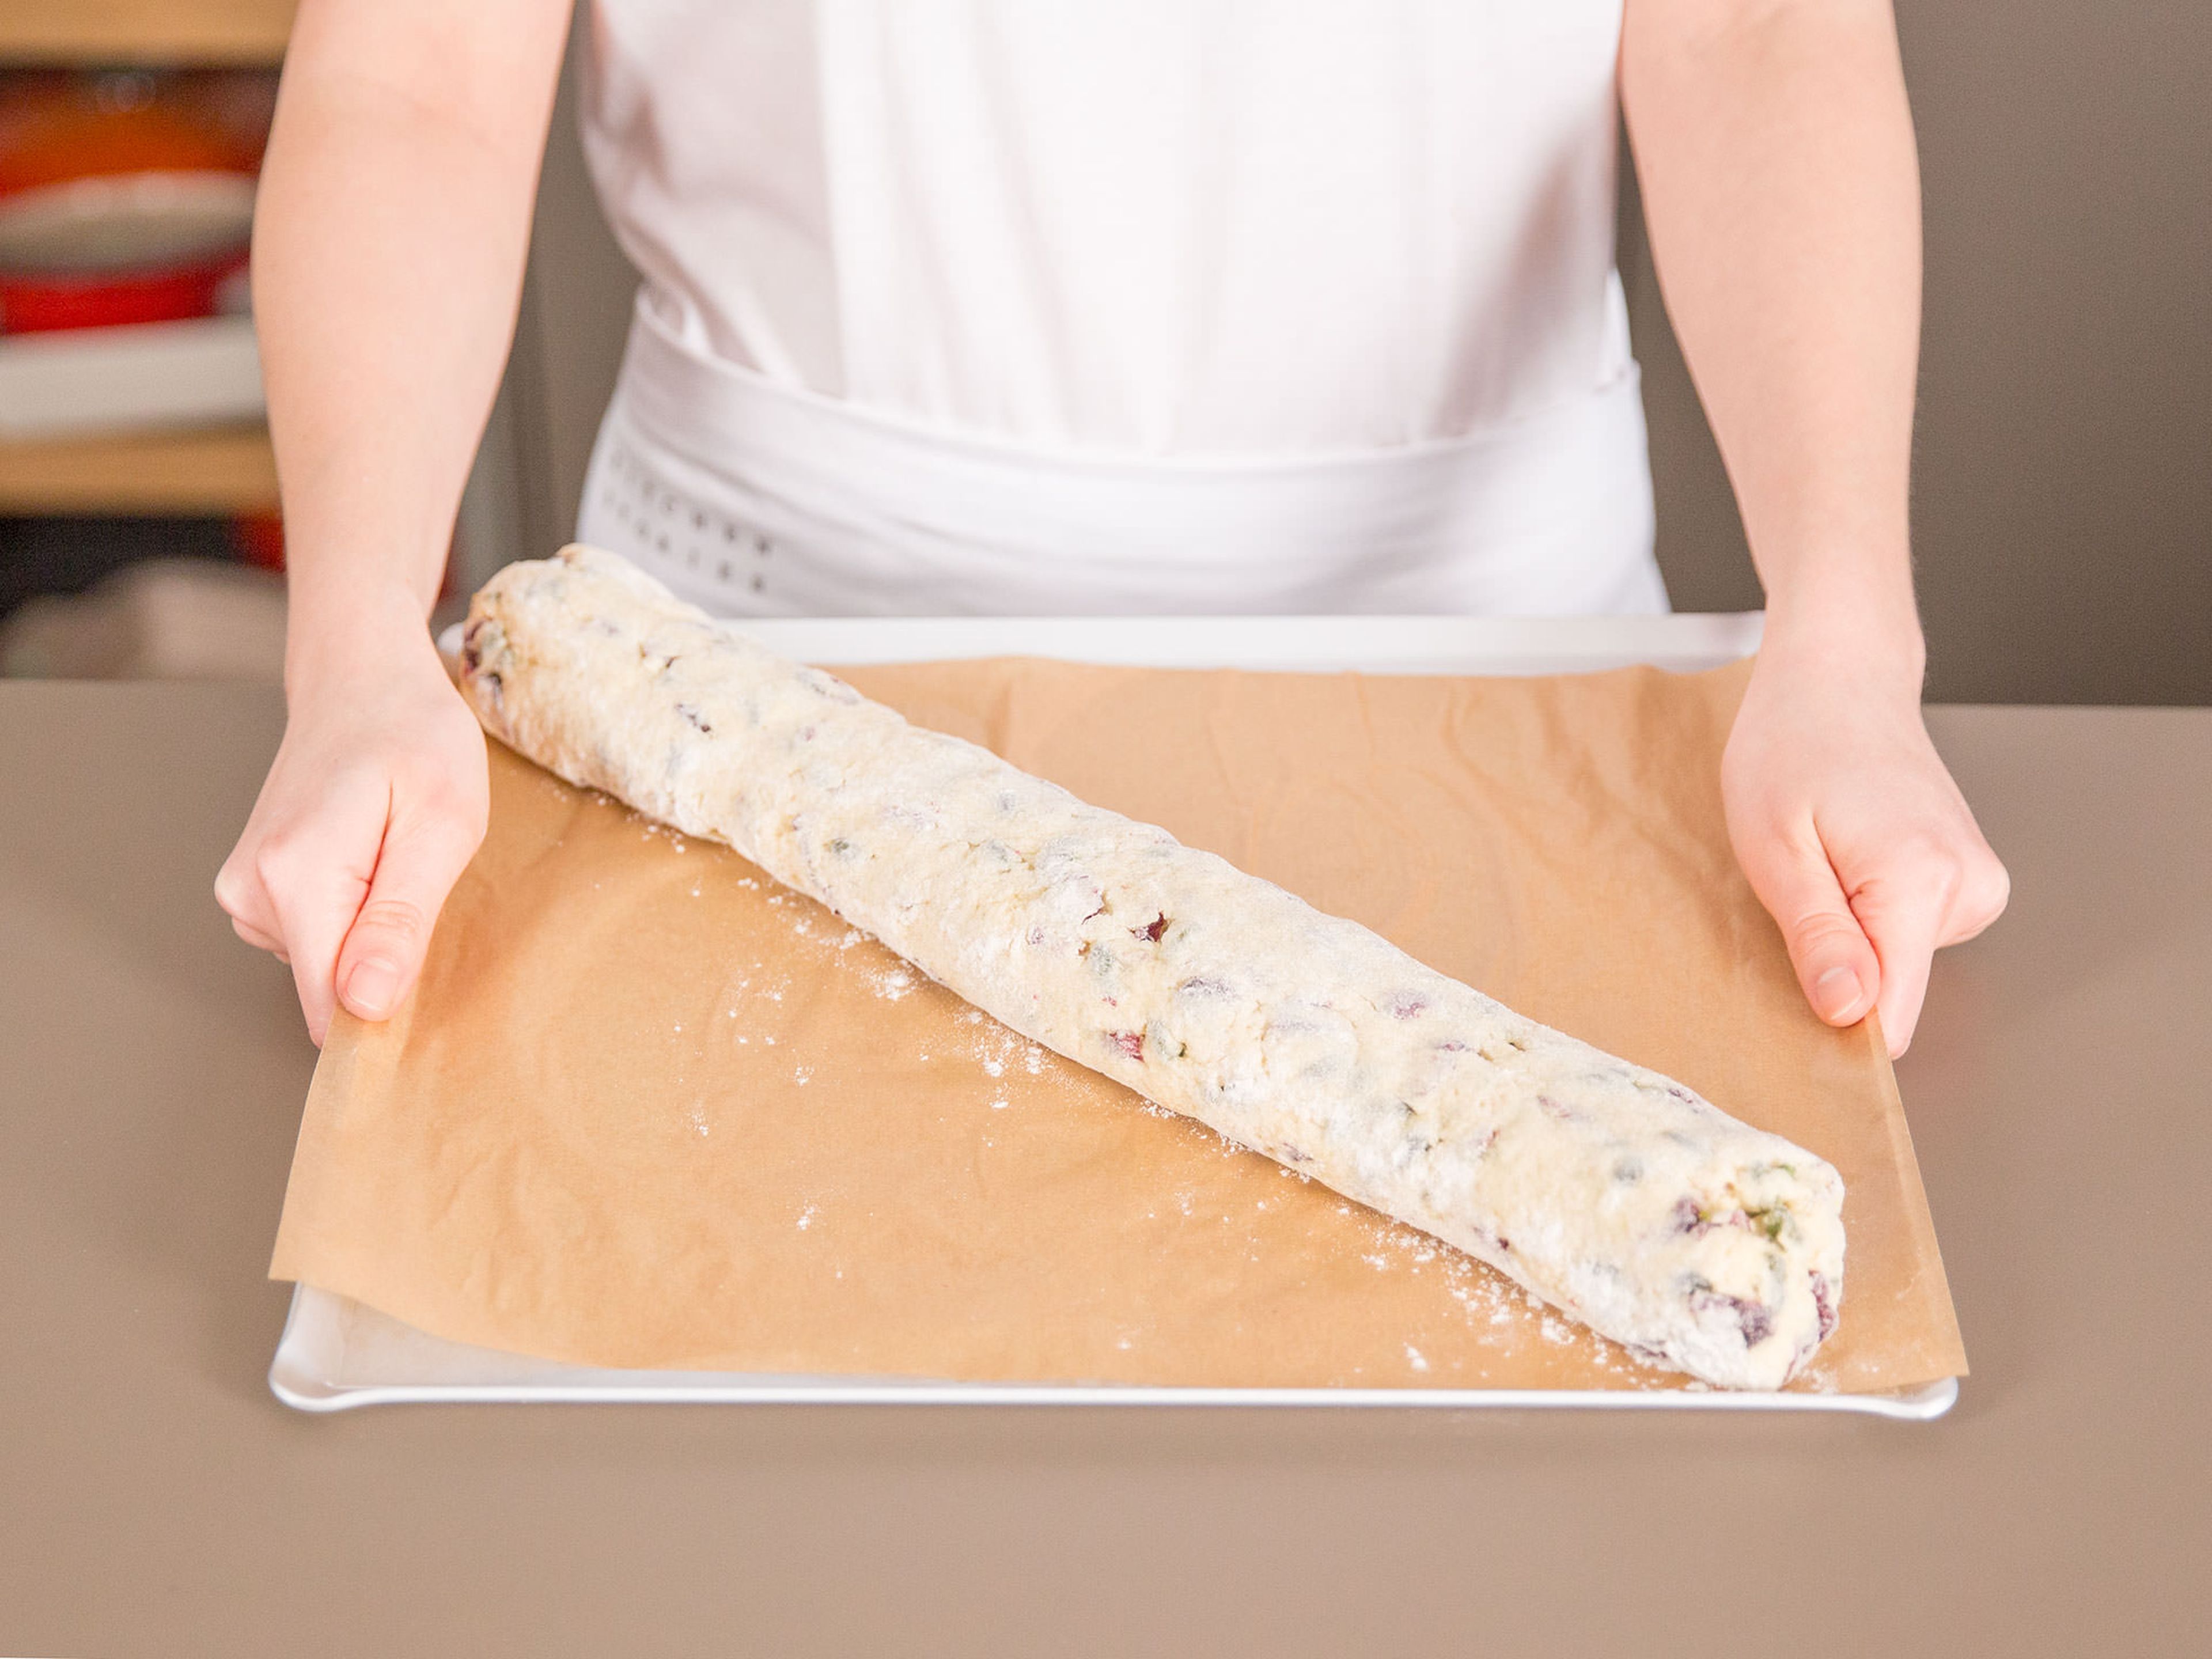 Die Rolle auf ein mit Backpapier ausgelegtes Backblech legen und im vorgeheizten Ofen bei 200°C ca. 20 – 30 Min. golden backen. Anschließend für ca. mindestens 30 Min. auskühlen lassen.